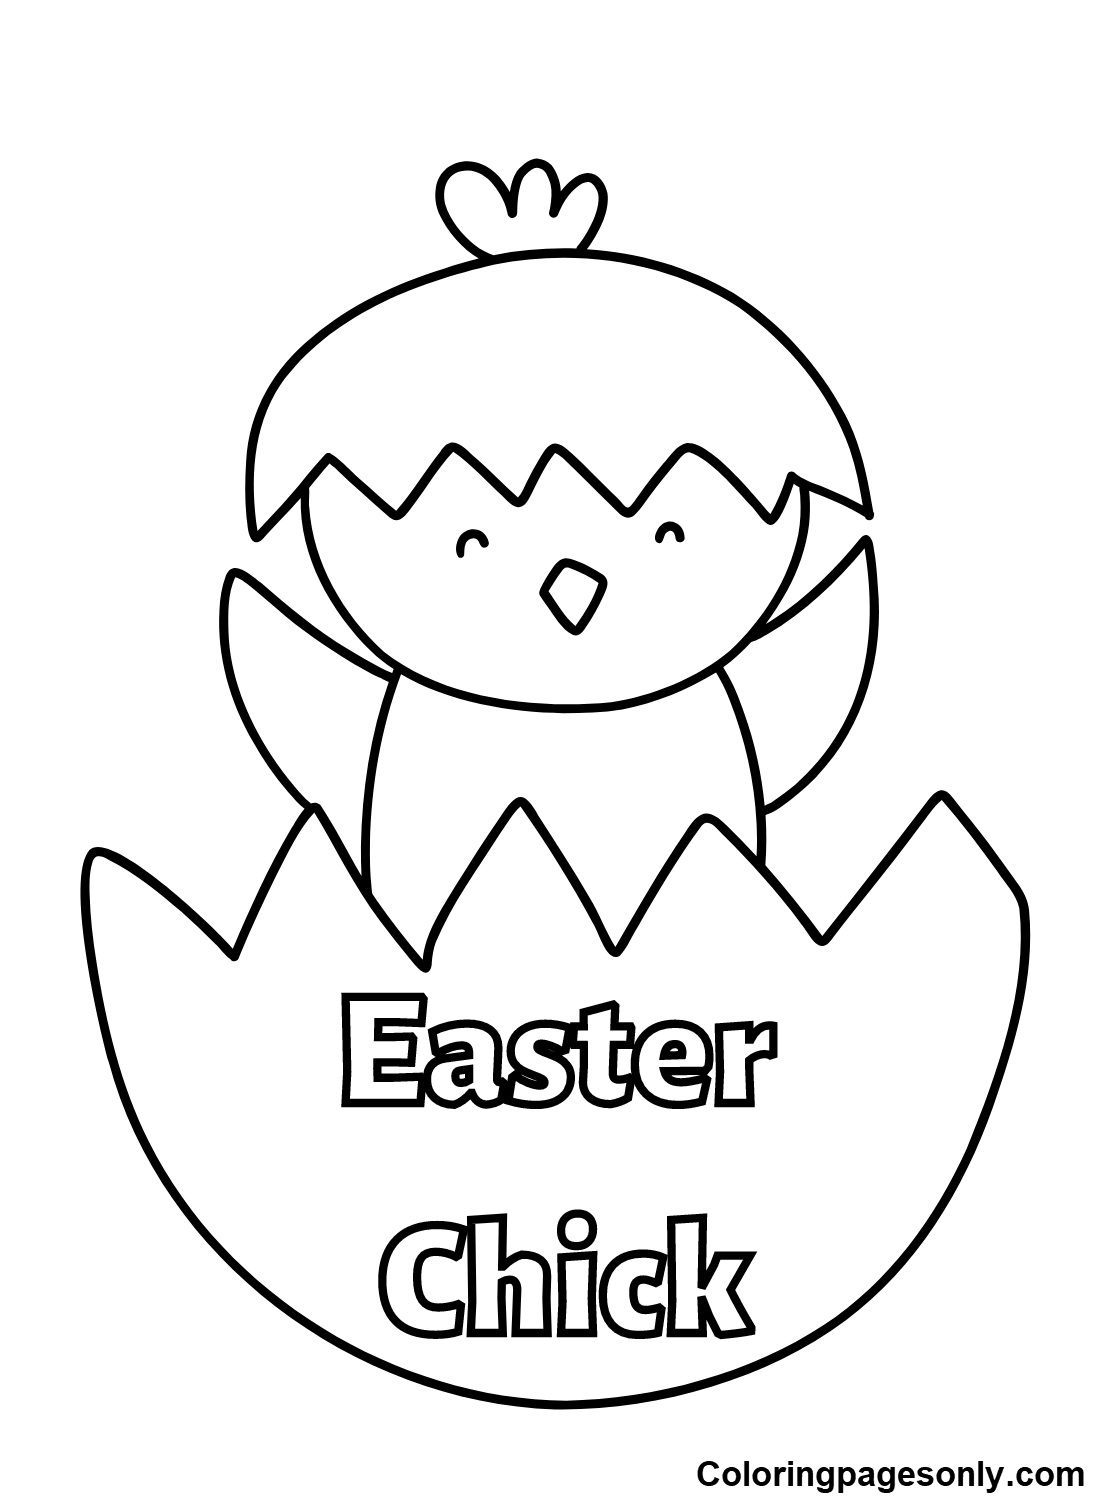 Chick-Osterbilder von Chick